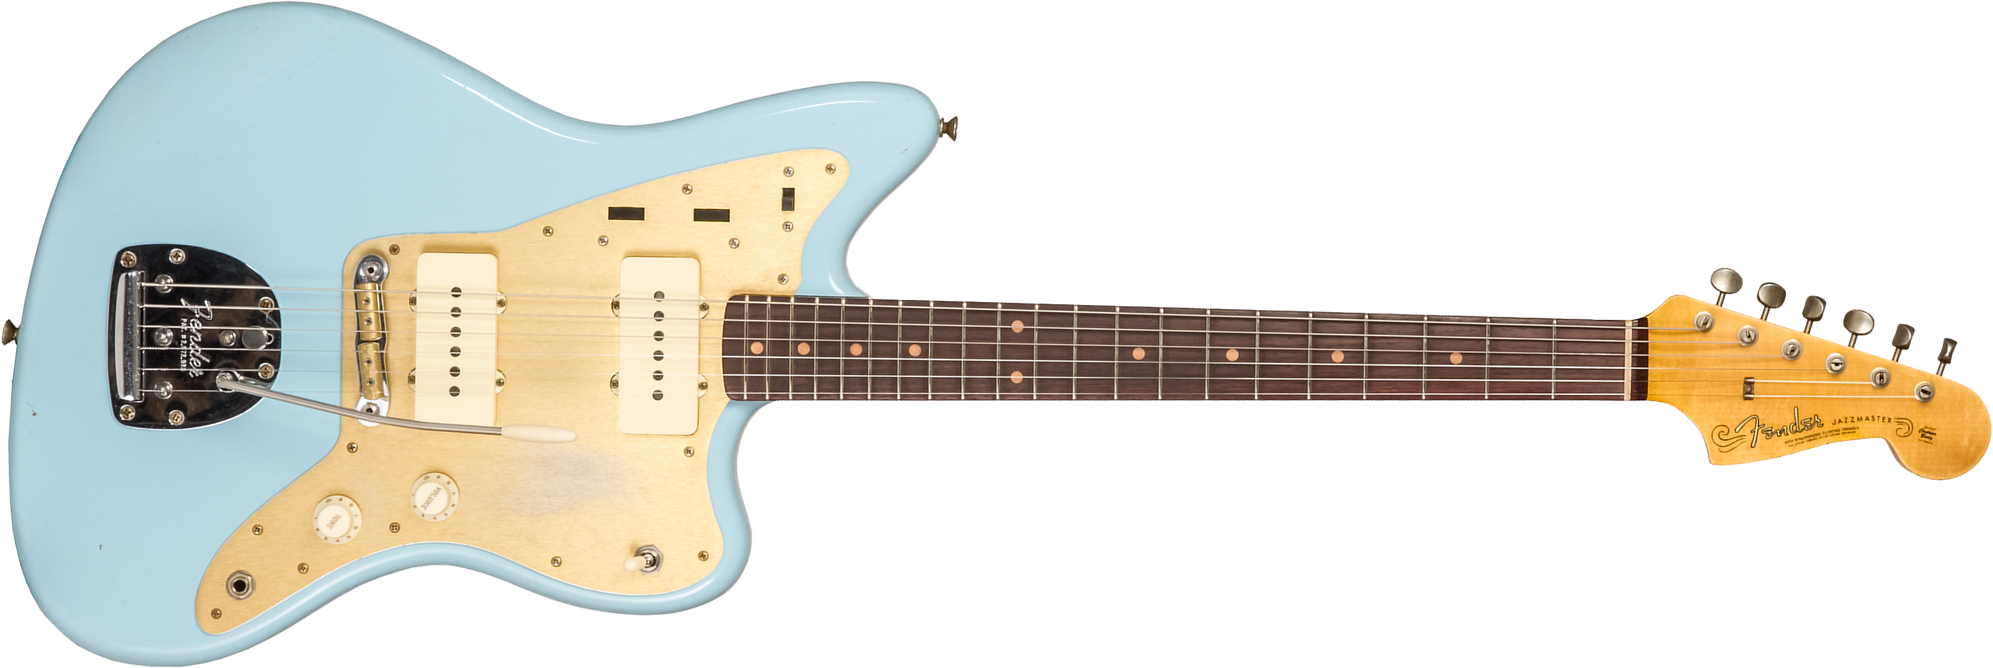 Fender Custom Shop Jazzmaster 1959 250k 2s Trem Rw #cz576203 - Journeyman Relic Aged Daphne Blue - Retro-rock elektrische gitaar - Main picture